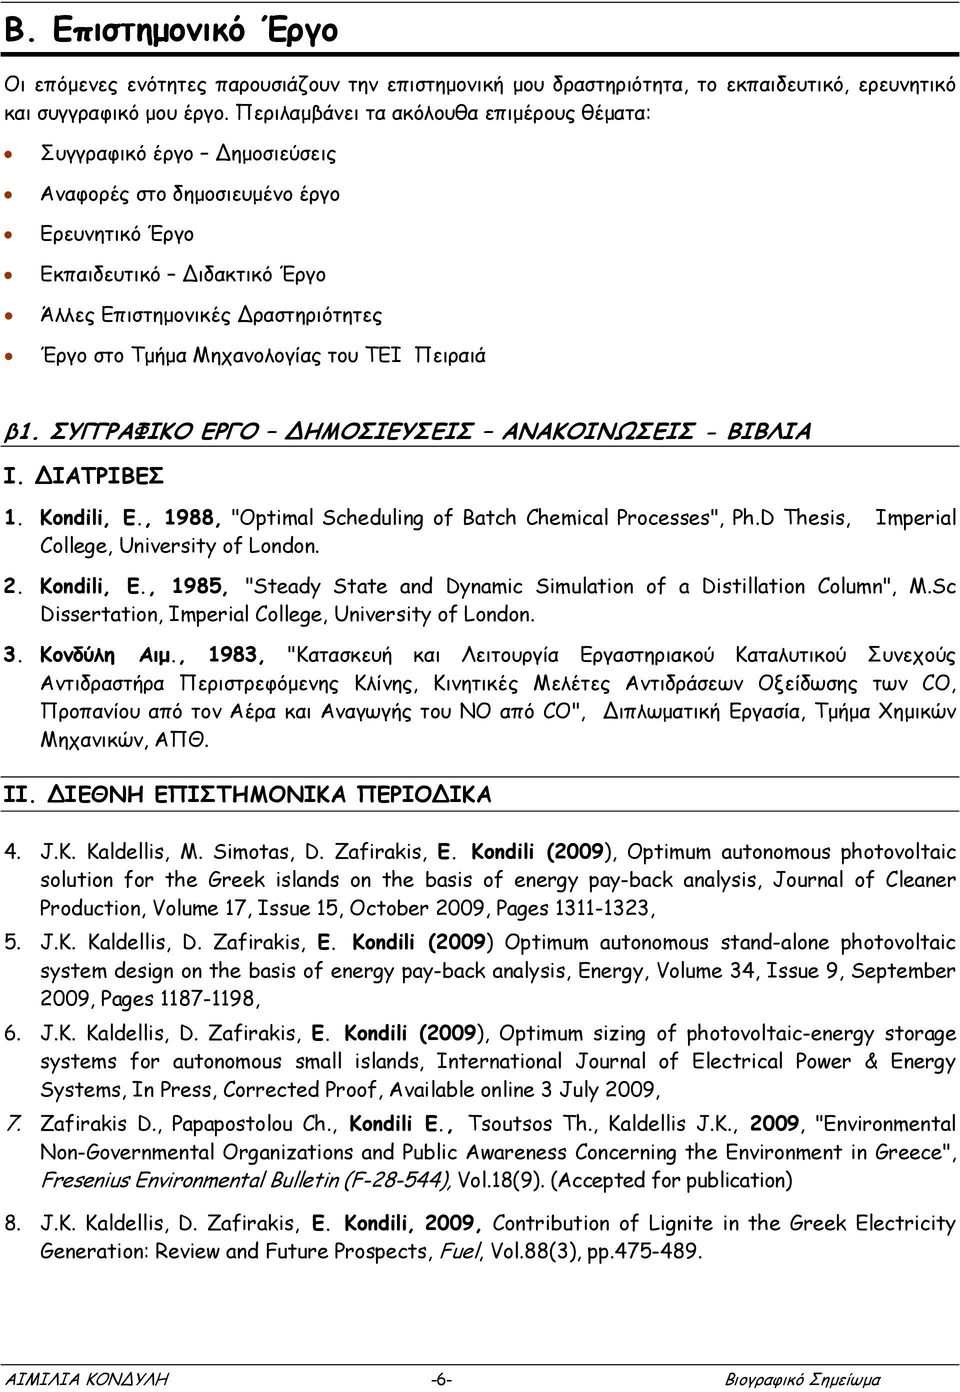 Μηχανολογίας του ΤΕΙ Πειραιά β1. ΣΥΓΓΡΑΦΙΚΟ ΕΡΓΟ ΗΜΟΣΙΕΥΣΕΙΣ ΑΝΑΚΟΙΝΩΣΕΙΣ - ΒΙΒΛΙΑ Ι. ΙΑΤΡΙΒΕΣ 1. Kondili, E., 1988, "Optimal Scheduling of Batch Chemical Processes", Ph.